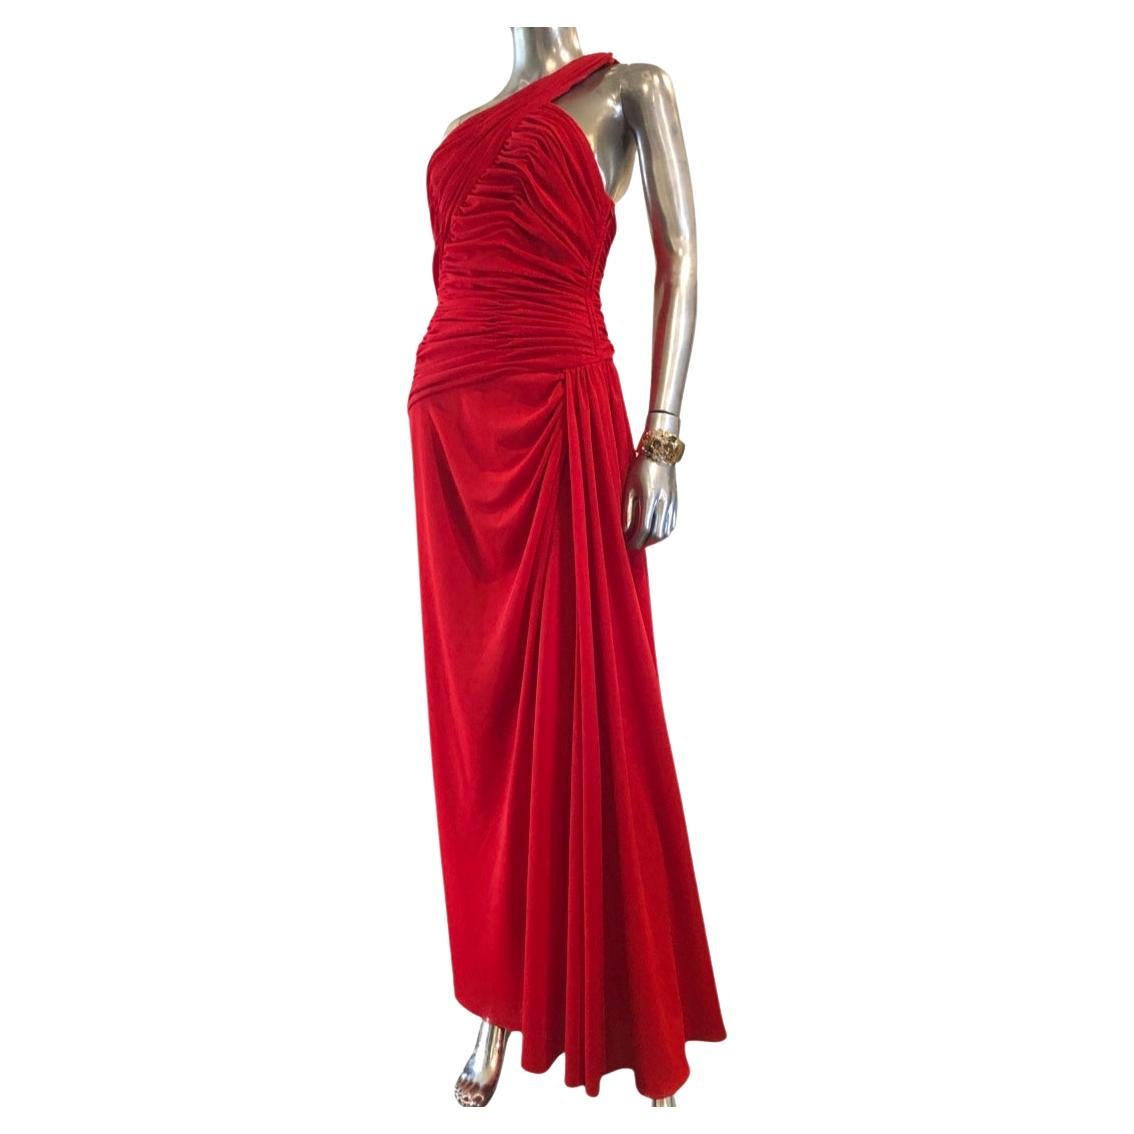 Estevez Hollywood Vintage One Shoulder Draped Red Crepe Dress Size 8